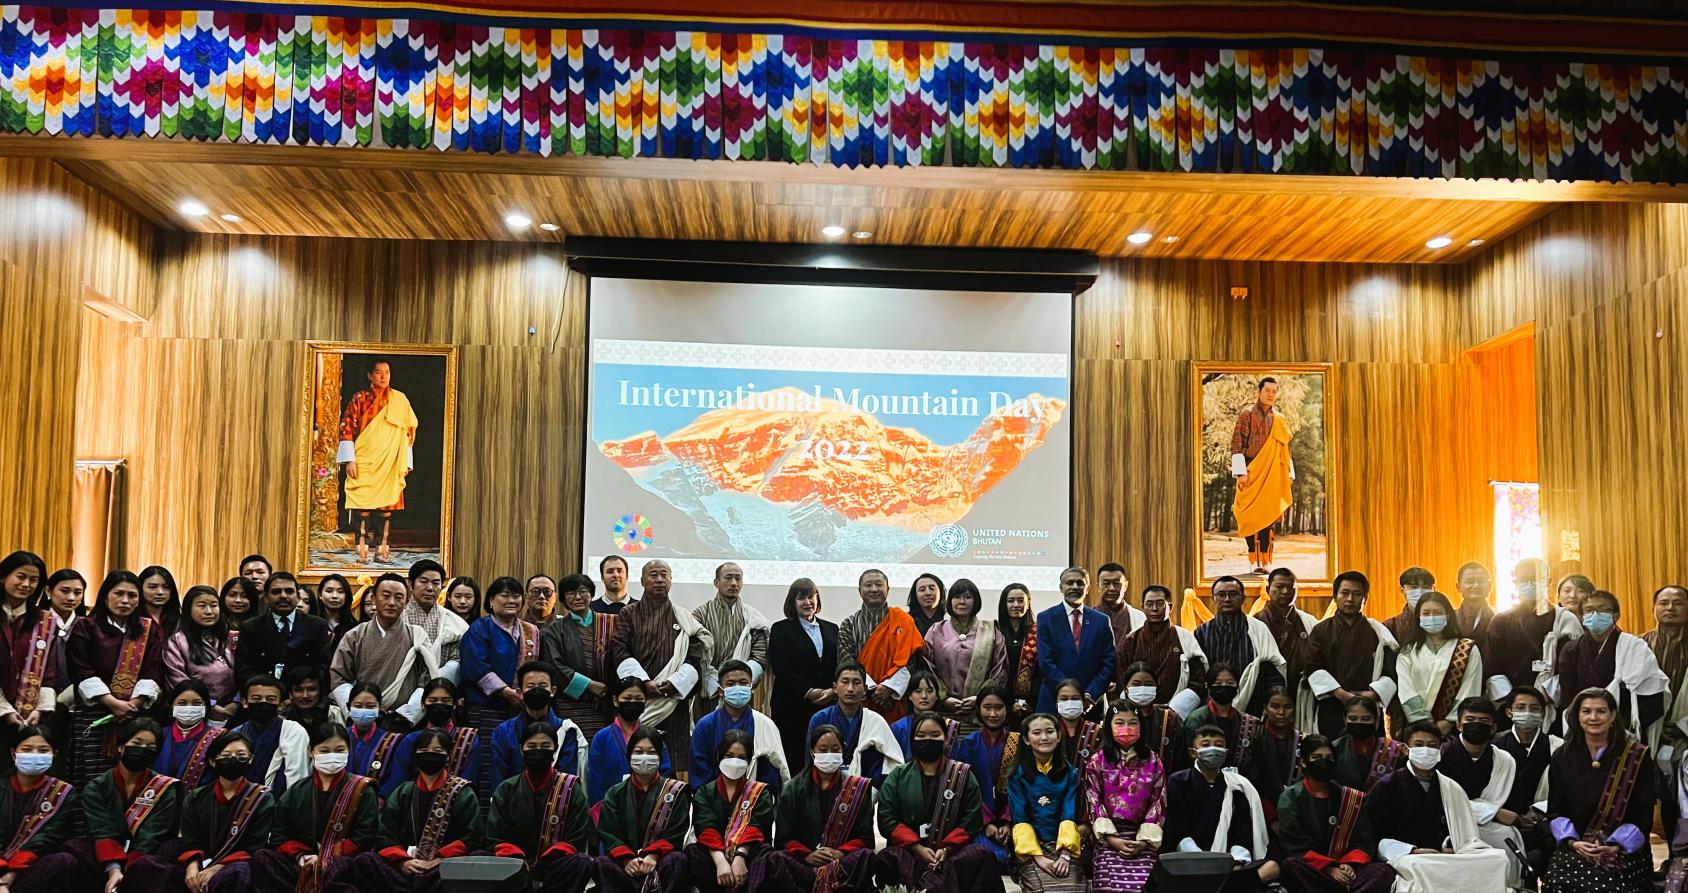 联合国驻不丹协调员卡拉·罗宾·赫希与来自帕罗和廷布的学生一起在不丹皇家大学的会议中心庆祝国际山岳日。 